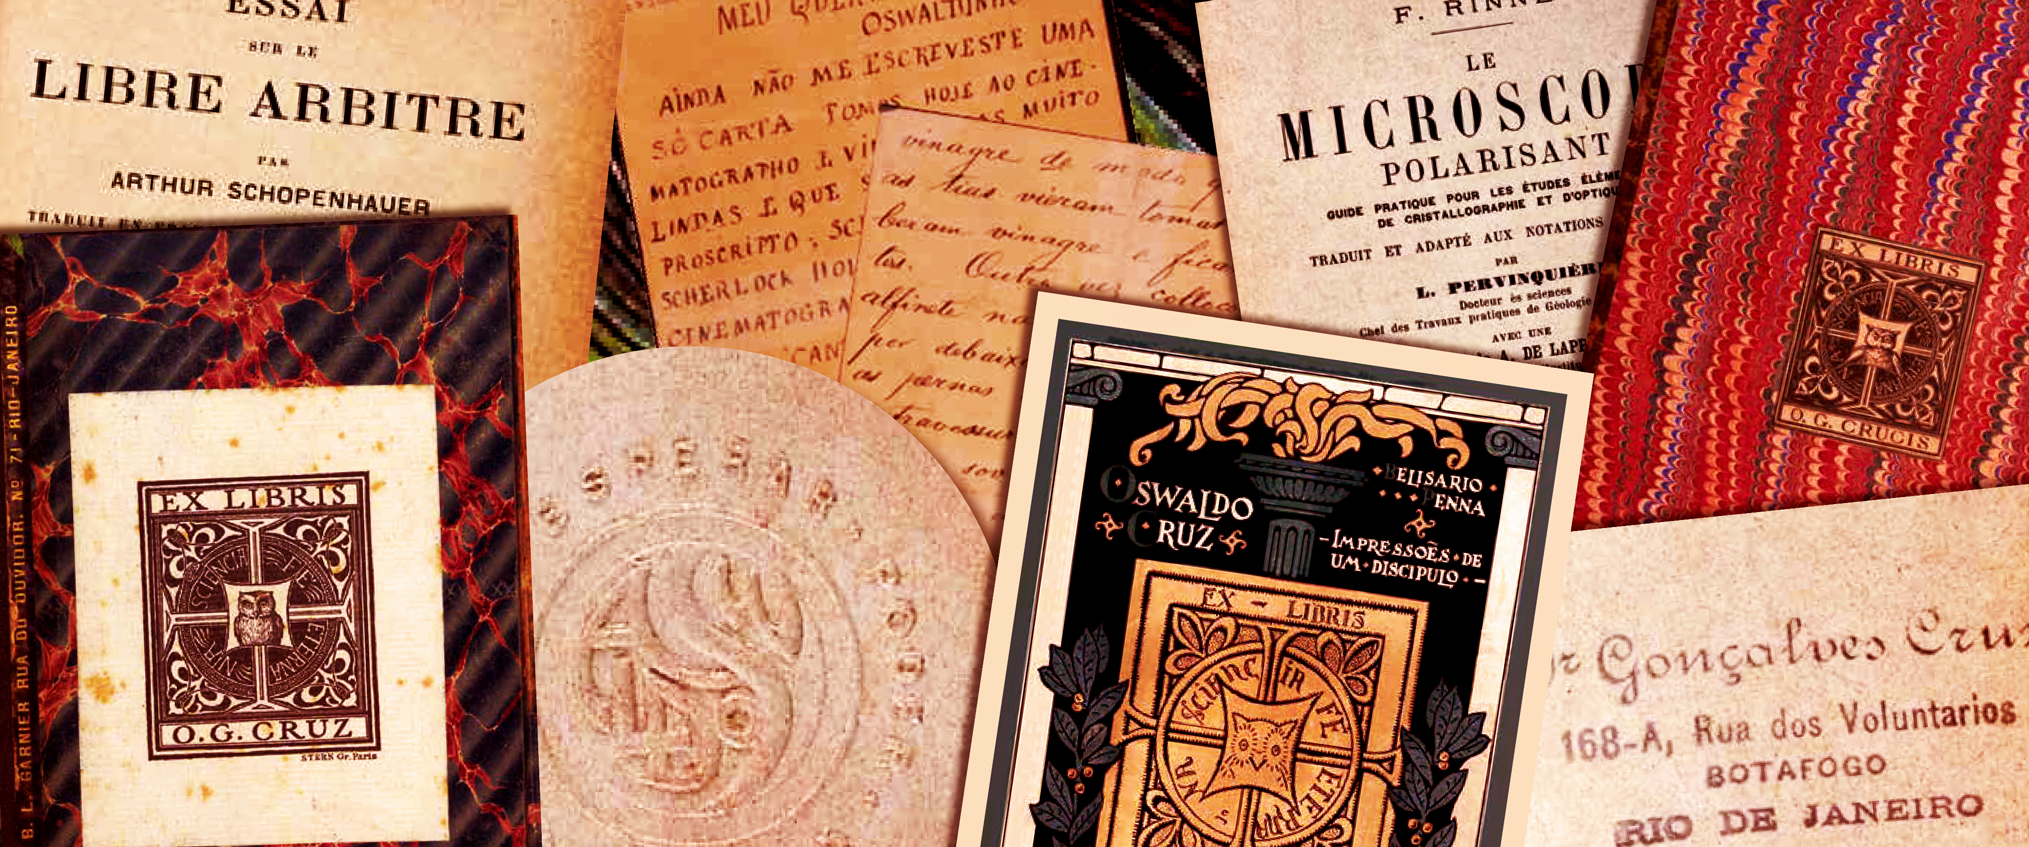 Catálogo reúne marcas de Oswaldo Cruz em livros e documentos